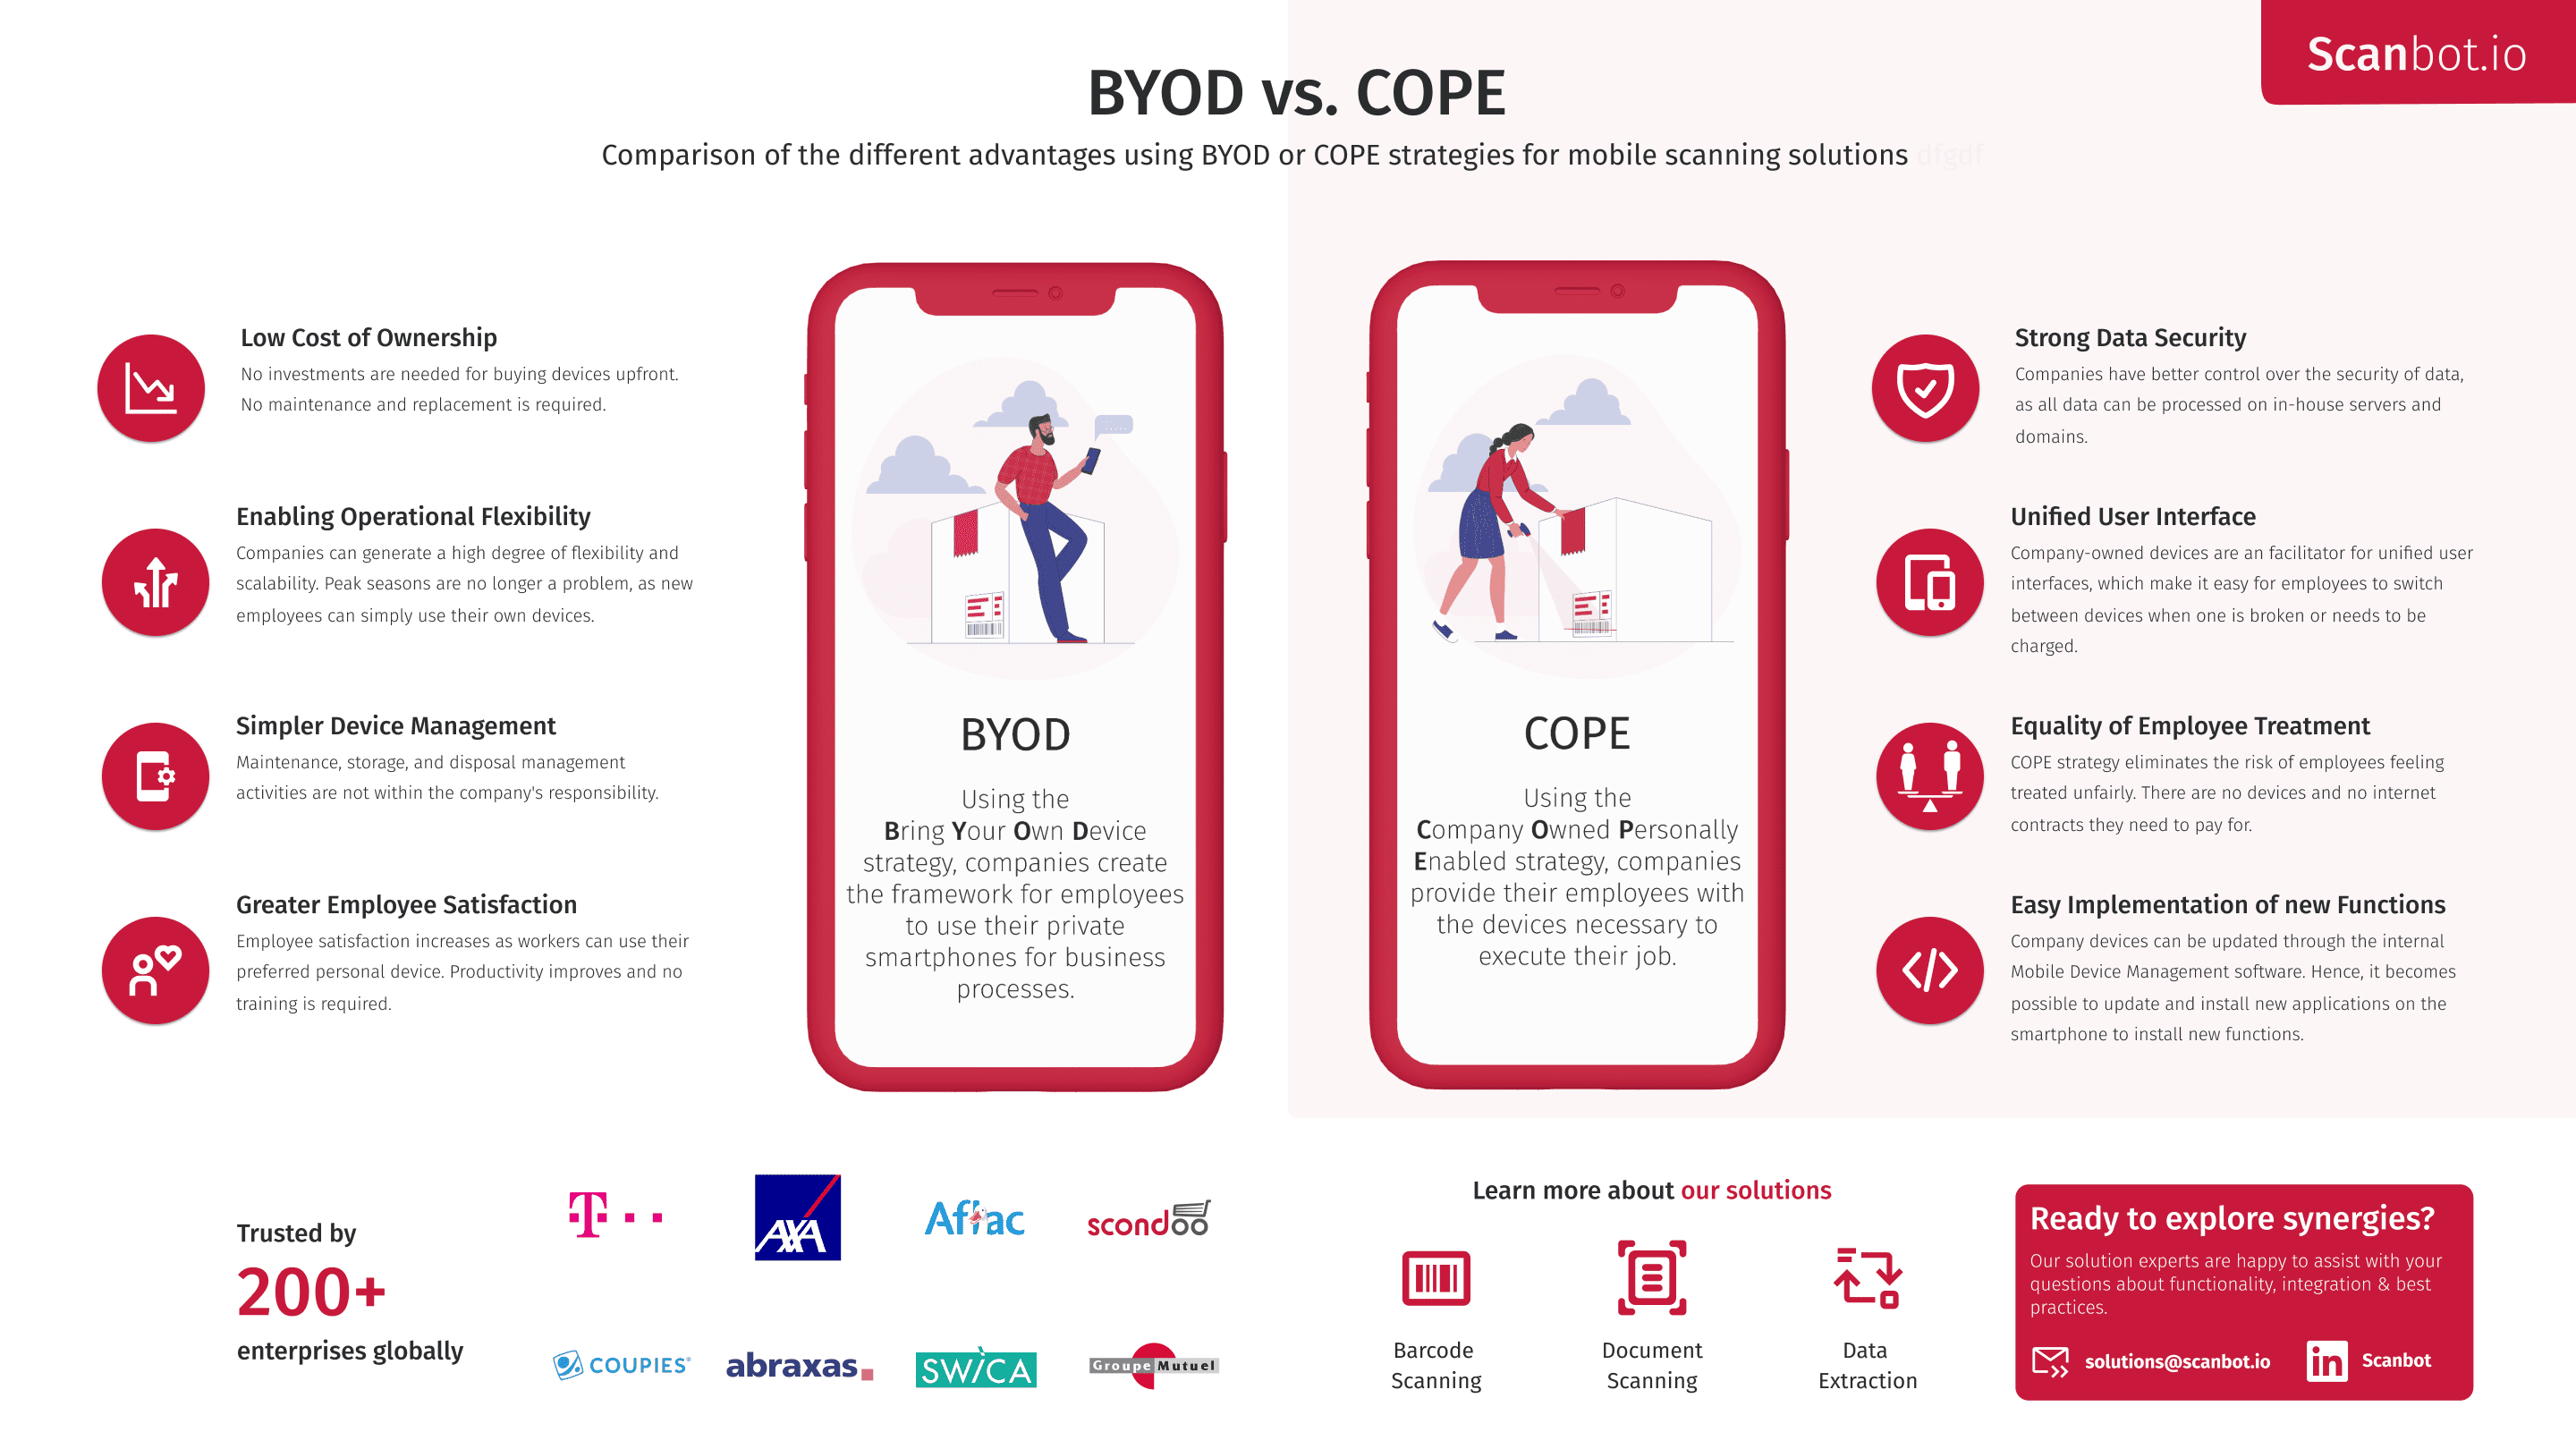 BYOD vs COPE